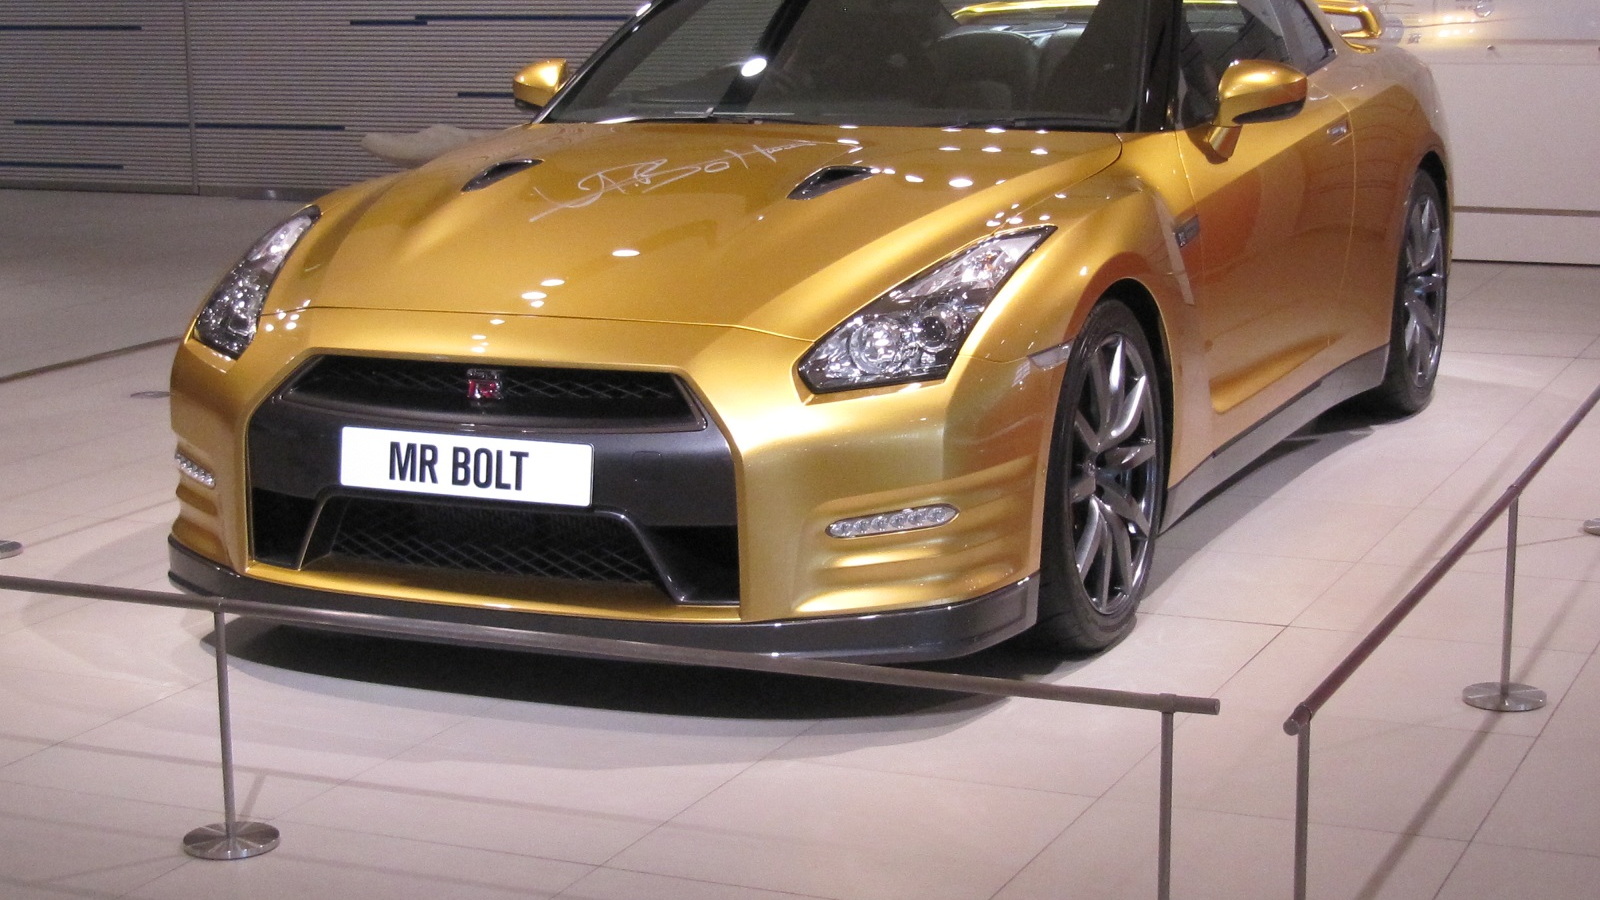 Nissan GT-R Usain Bolt special edition, Nissan headquarters lobby, Yokohama, Japan